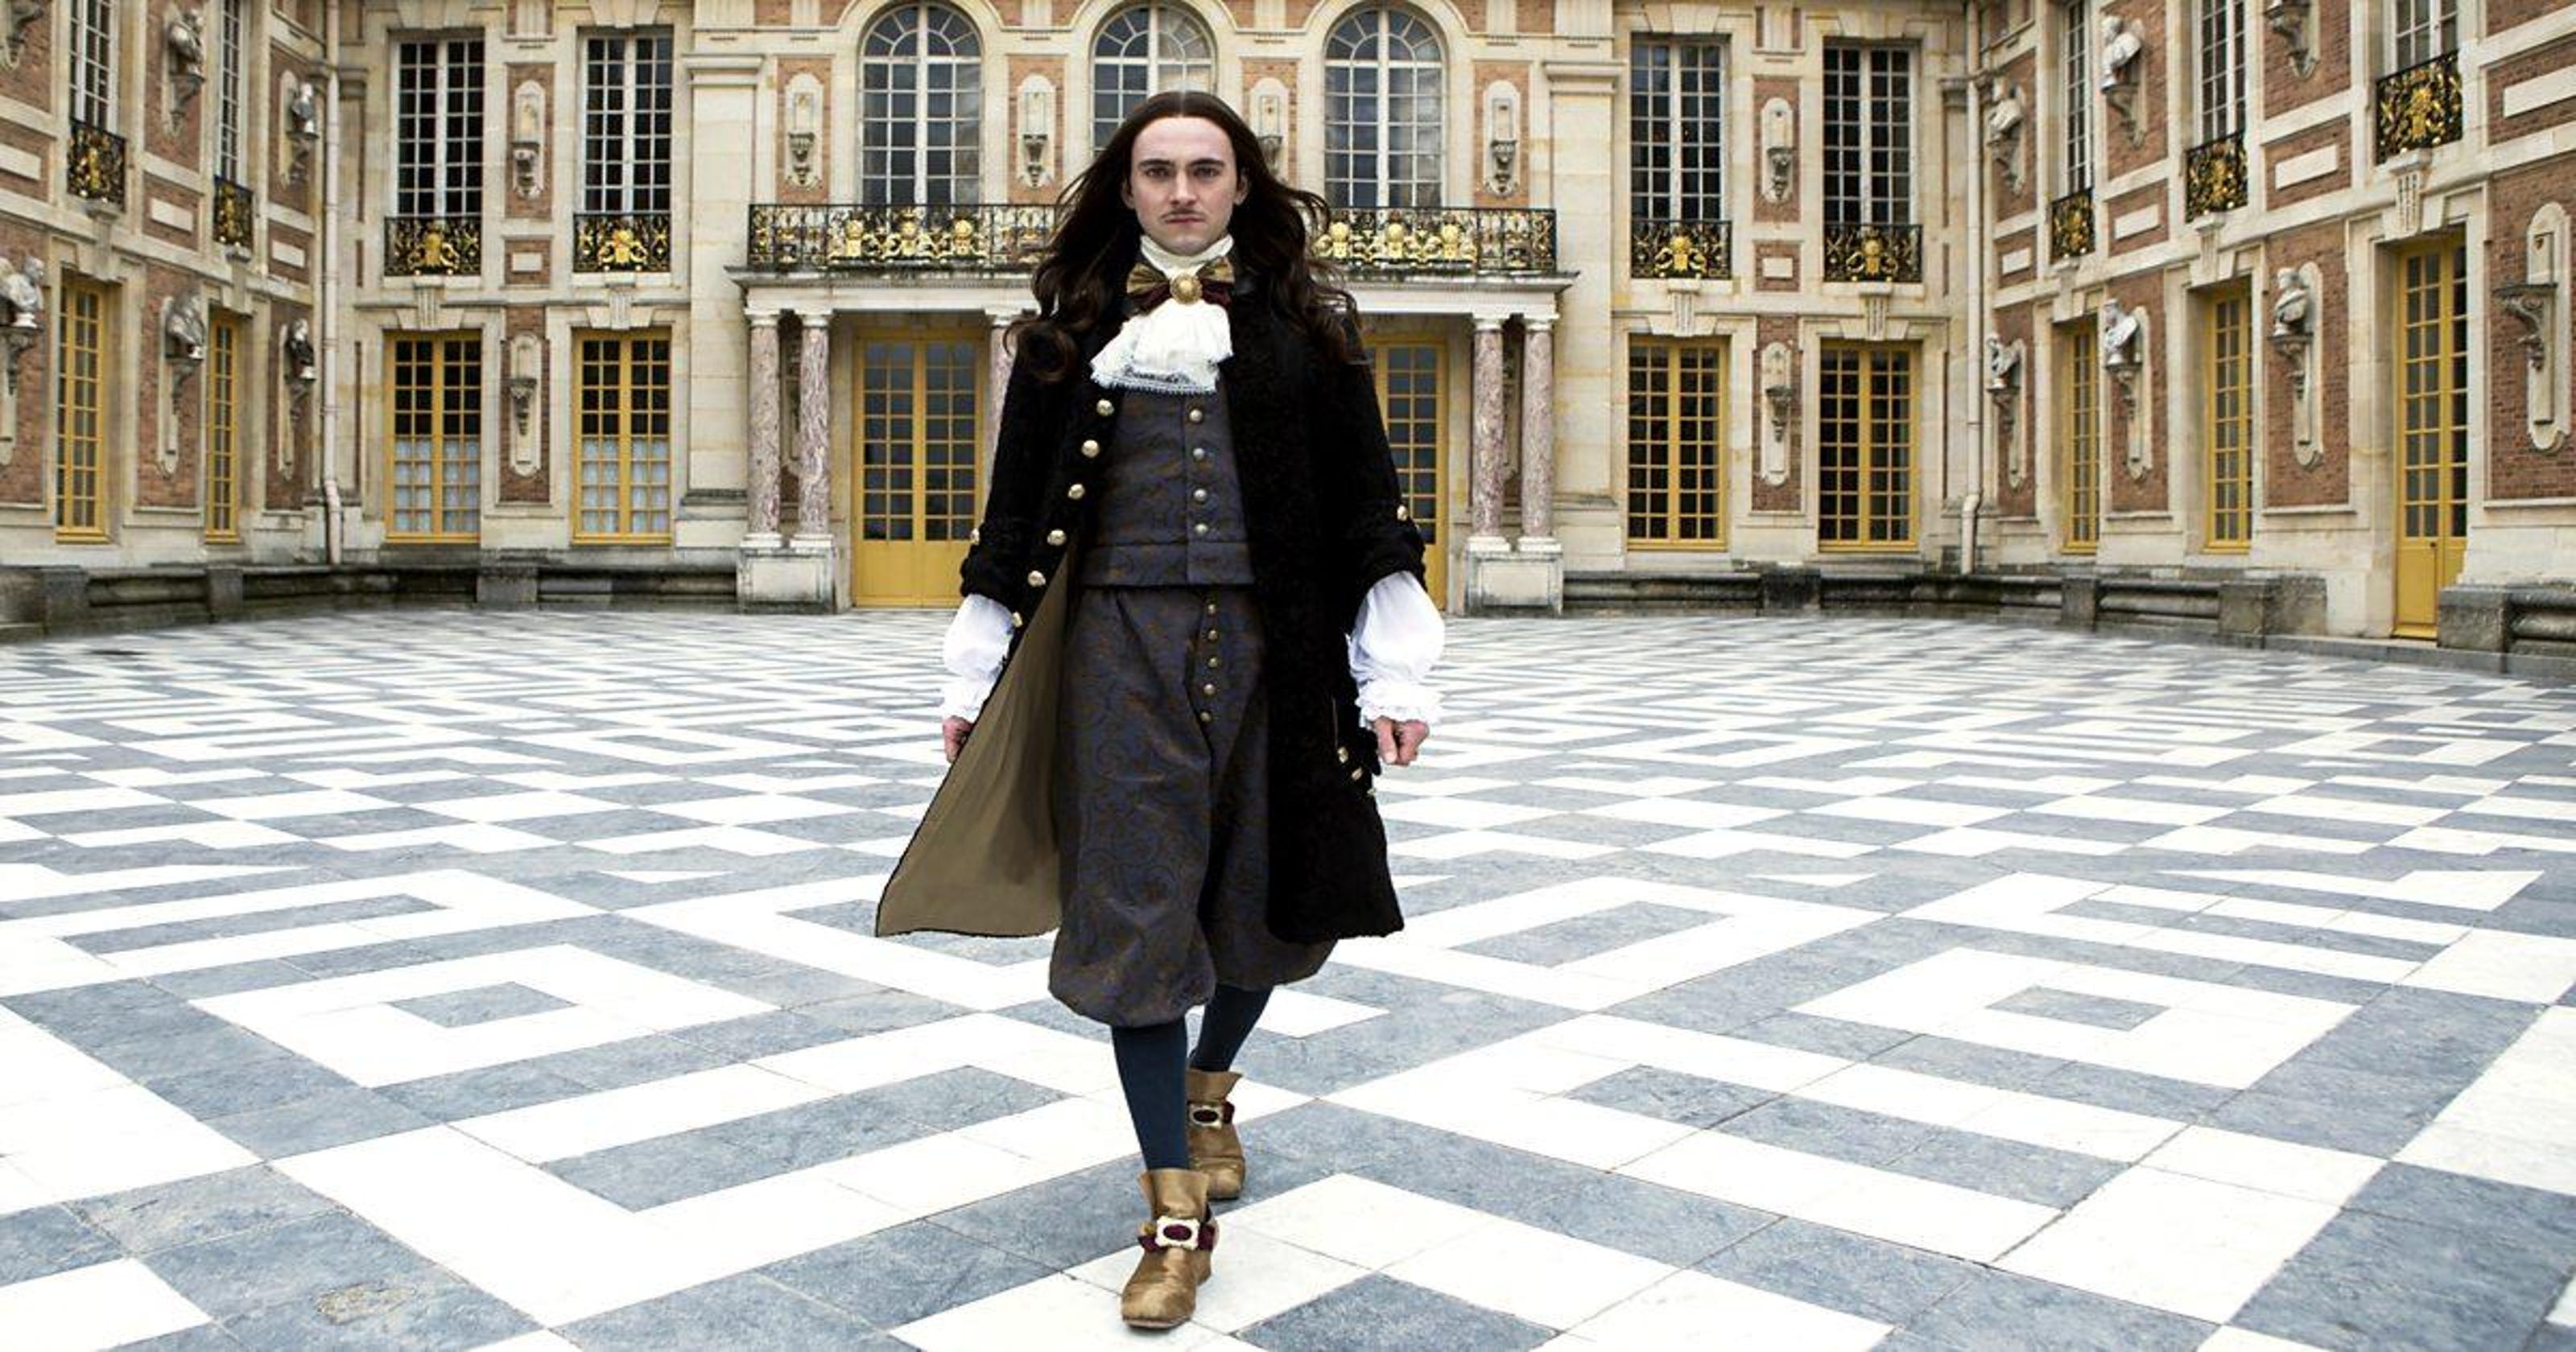 Lush ‘Versailles’ series tells of King Louis XIV’s huge life